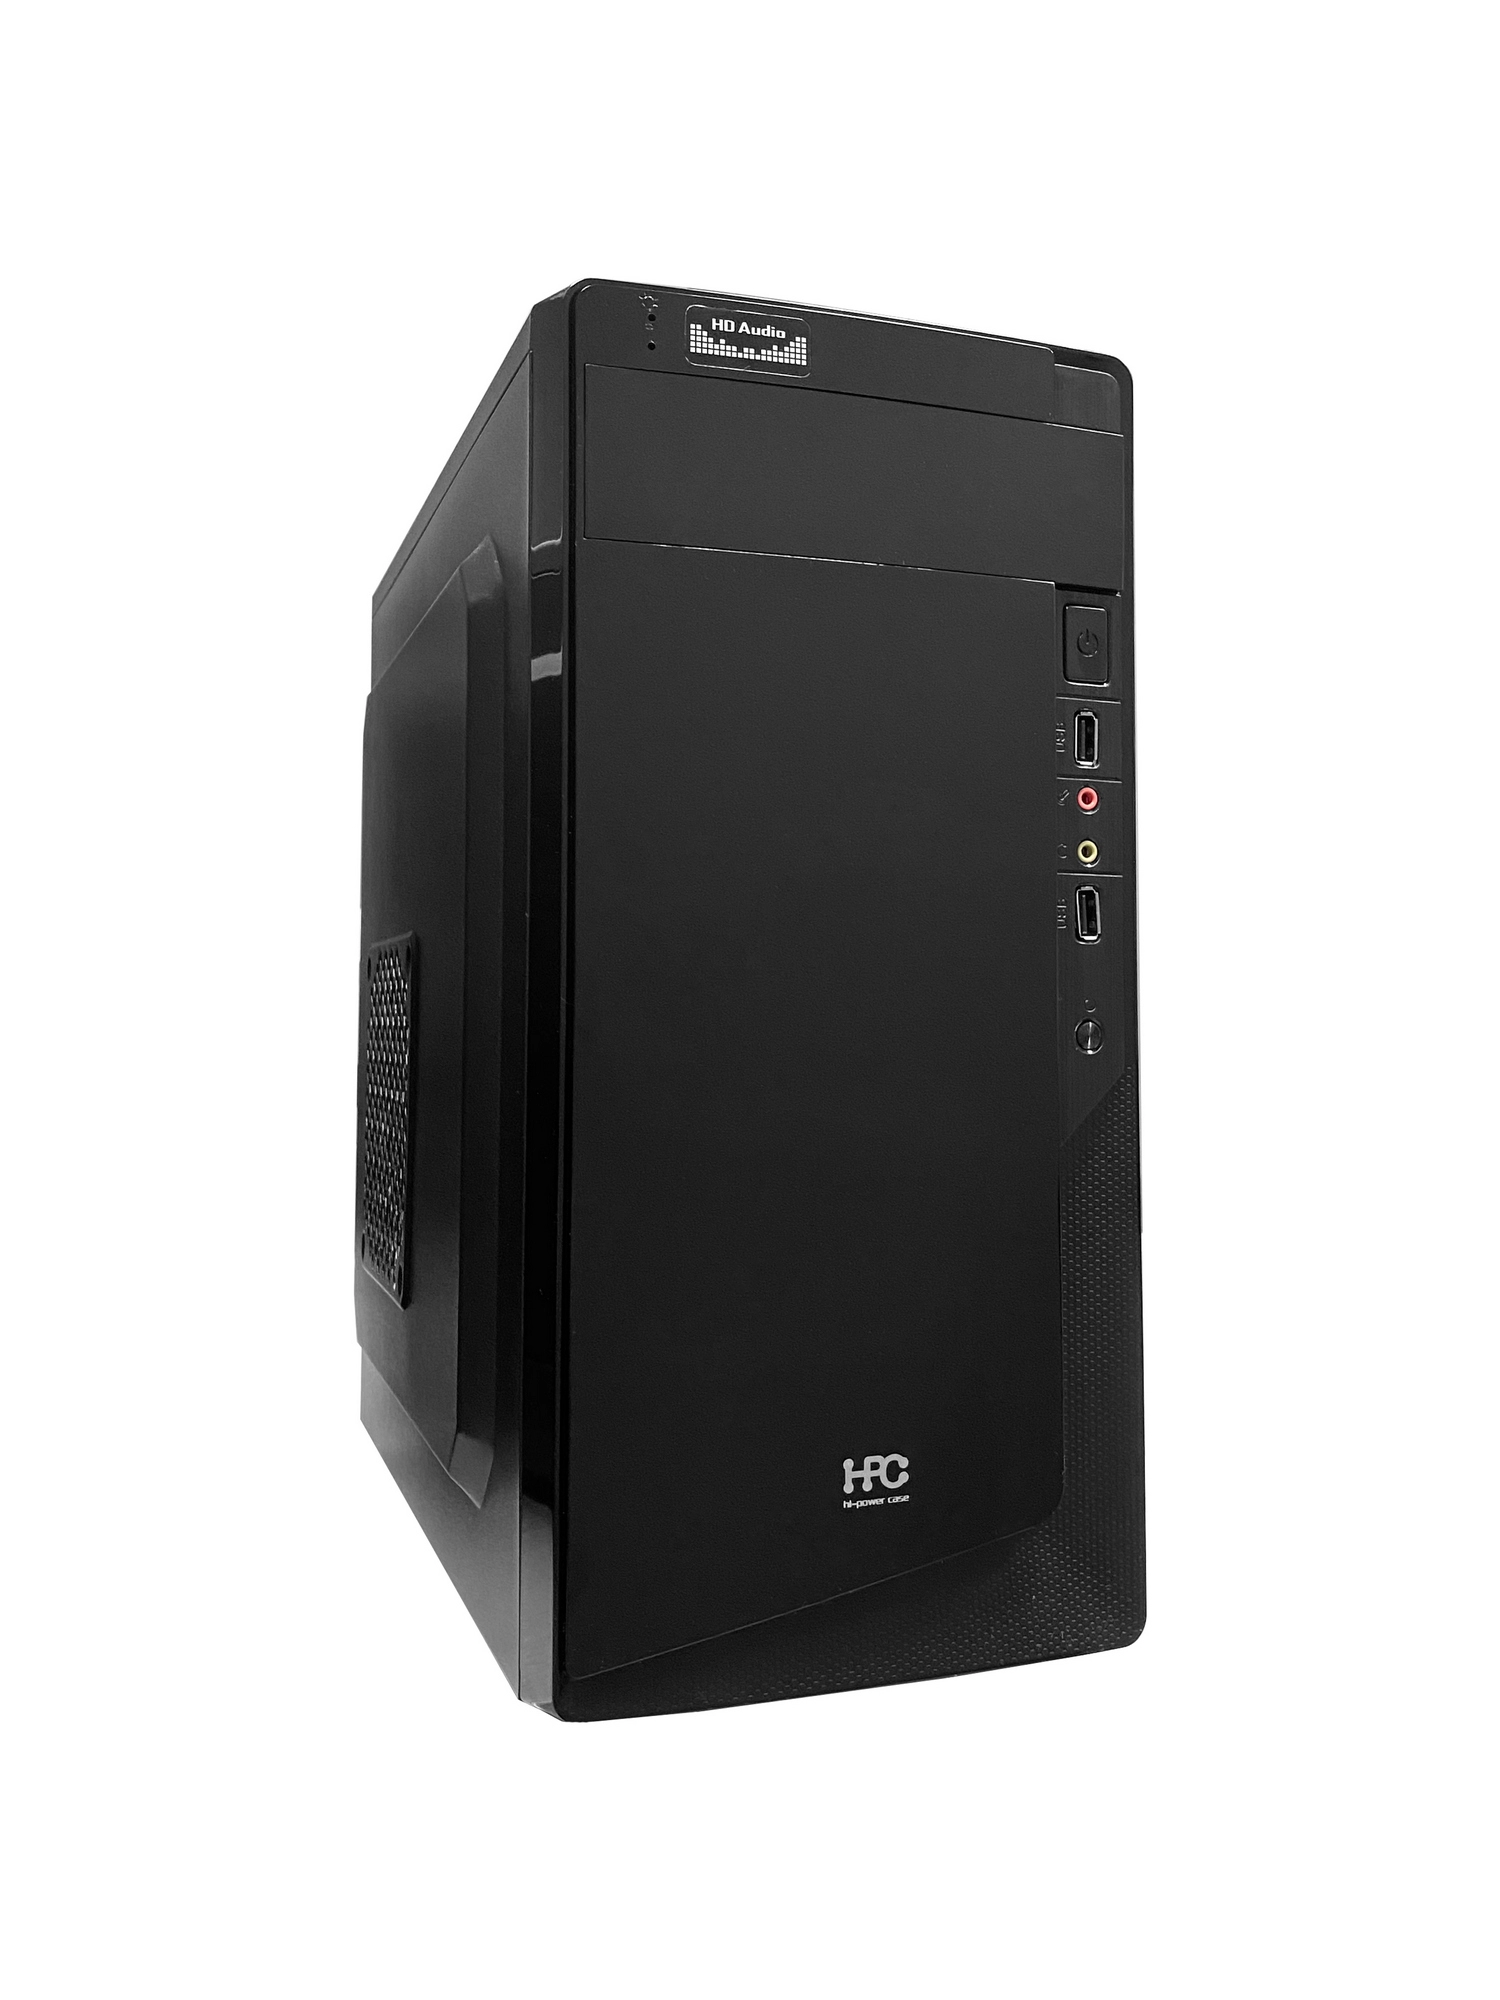 Компьютер ATOL PC1037MP - Home #4 v2.3 / AMD Ryzen 5 2400G / 8GB / 256GB SSD / Black